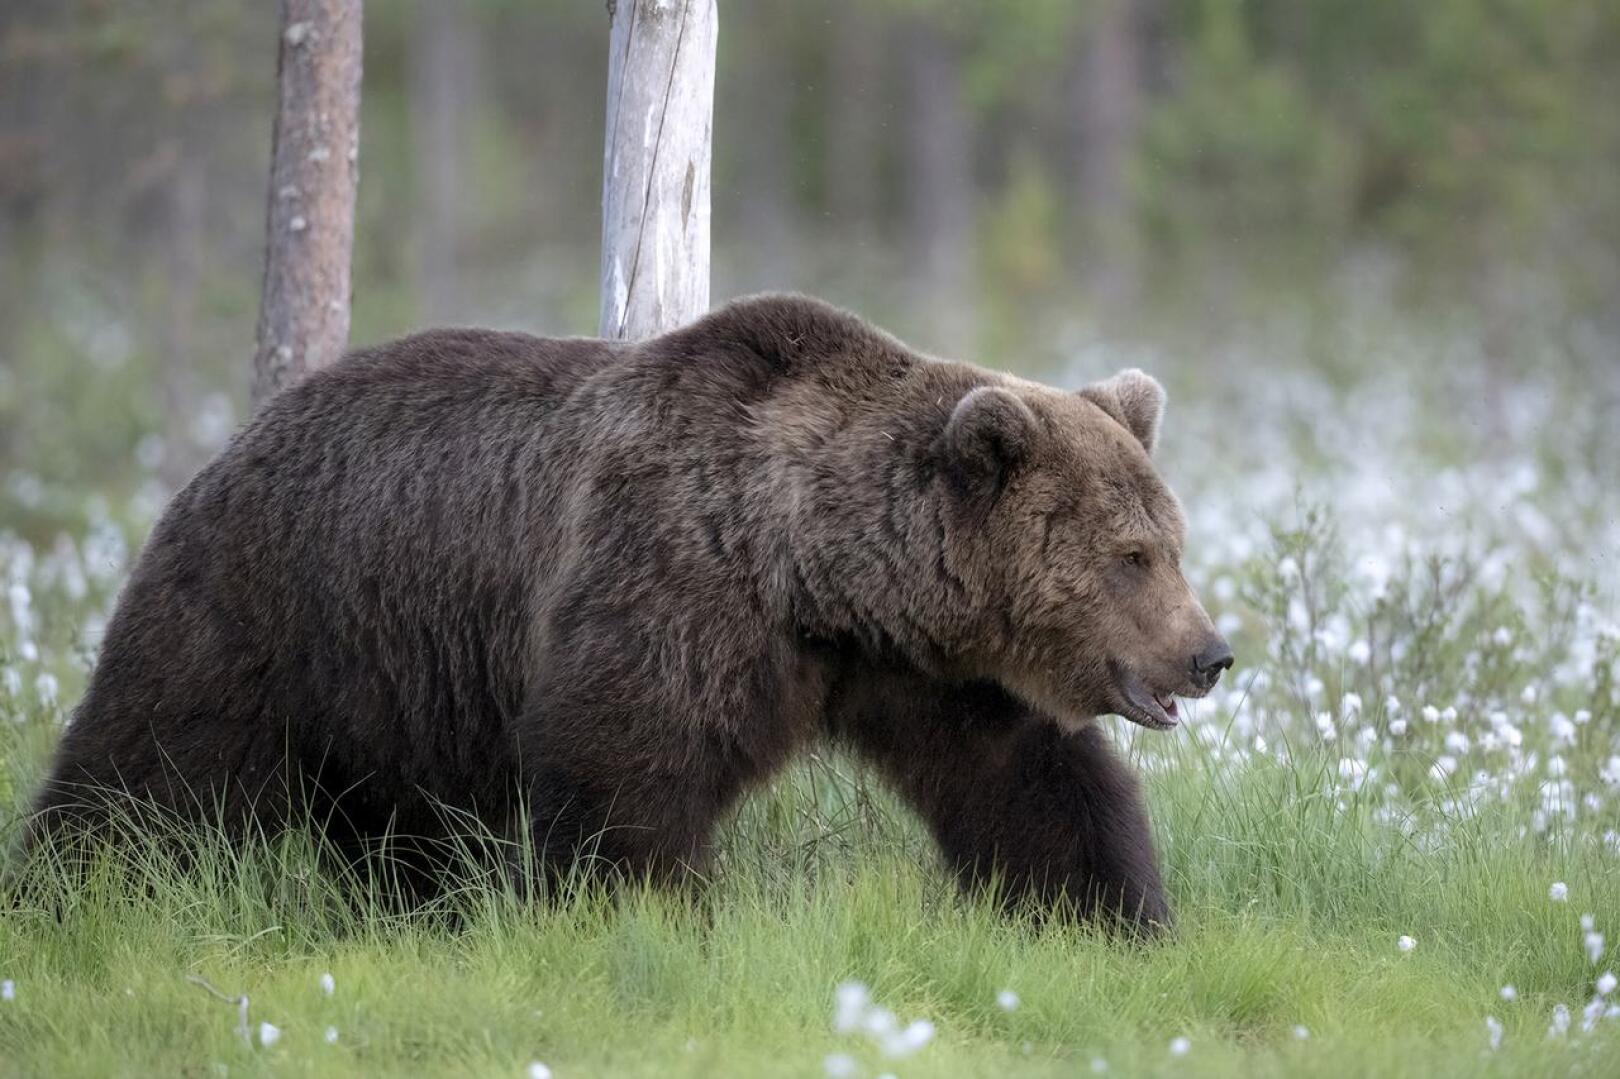 Sonja Kantola sekä Tuomo ja Eevi Haapakoski näkivät karhun perjantai-iltana Pinolan Ollannevalla.